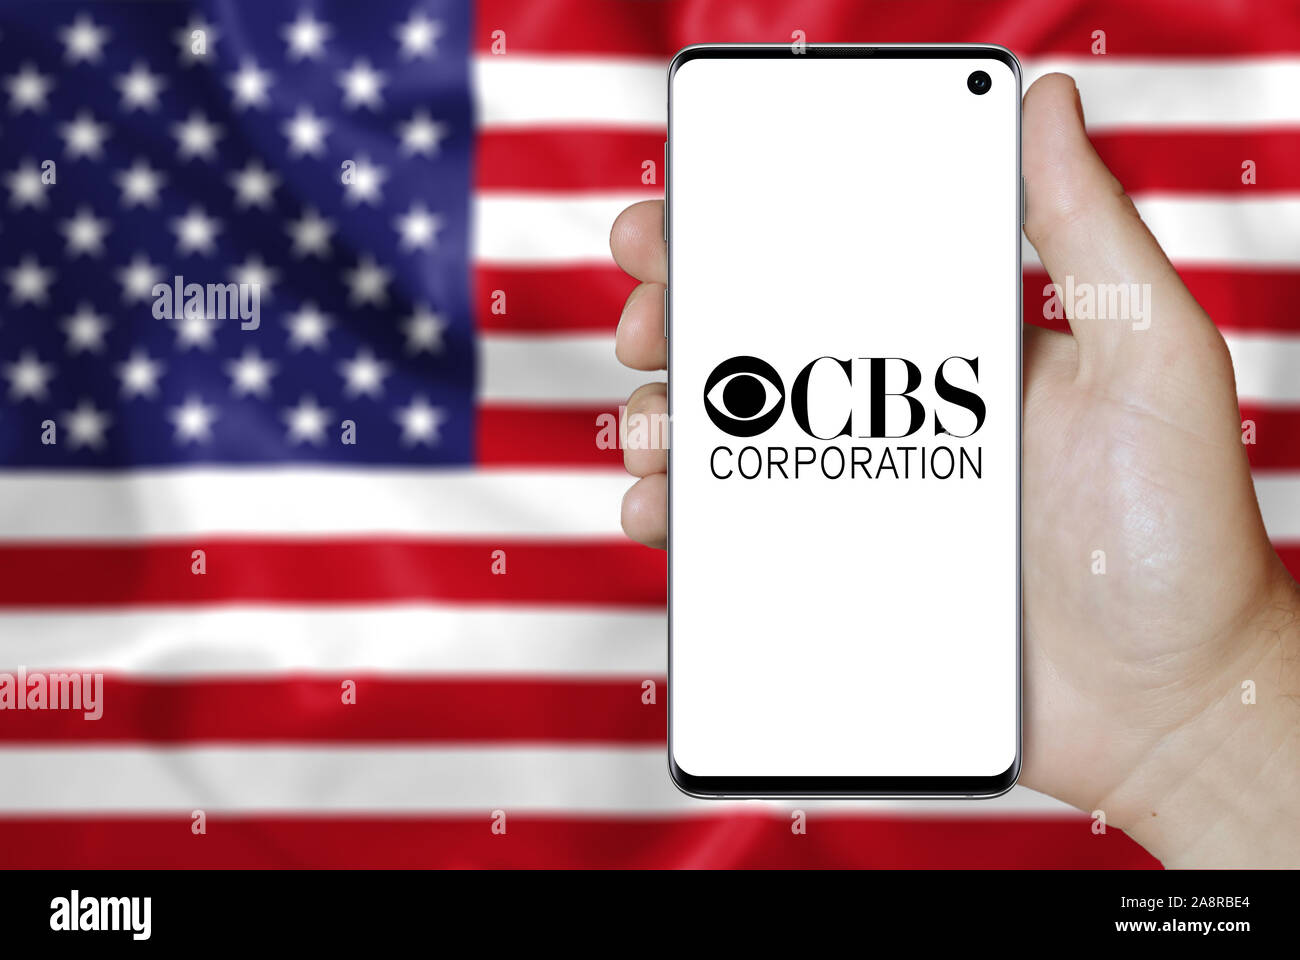 Logo der öffentlichen Unternehmen CBS Corp. auf dem Smartphone angezeigt. Flagge der USA Hintergrund. Credit: PIXDUCE Stockfoto